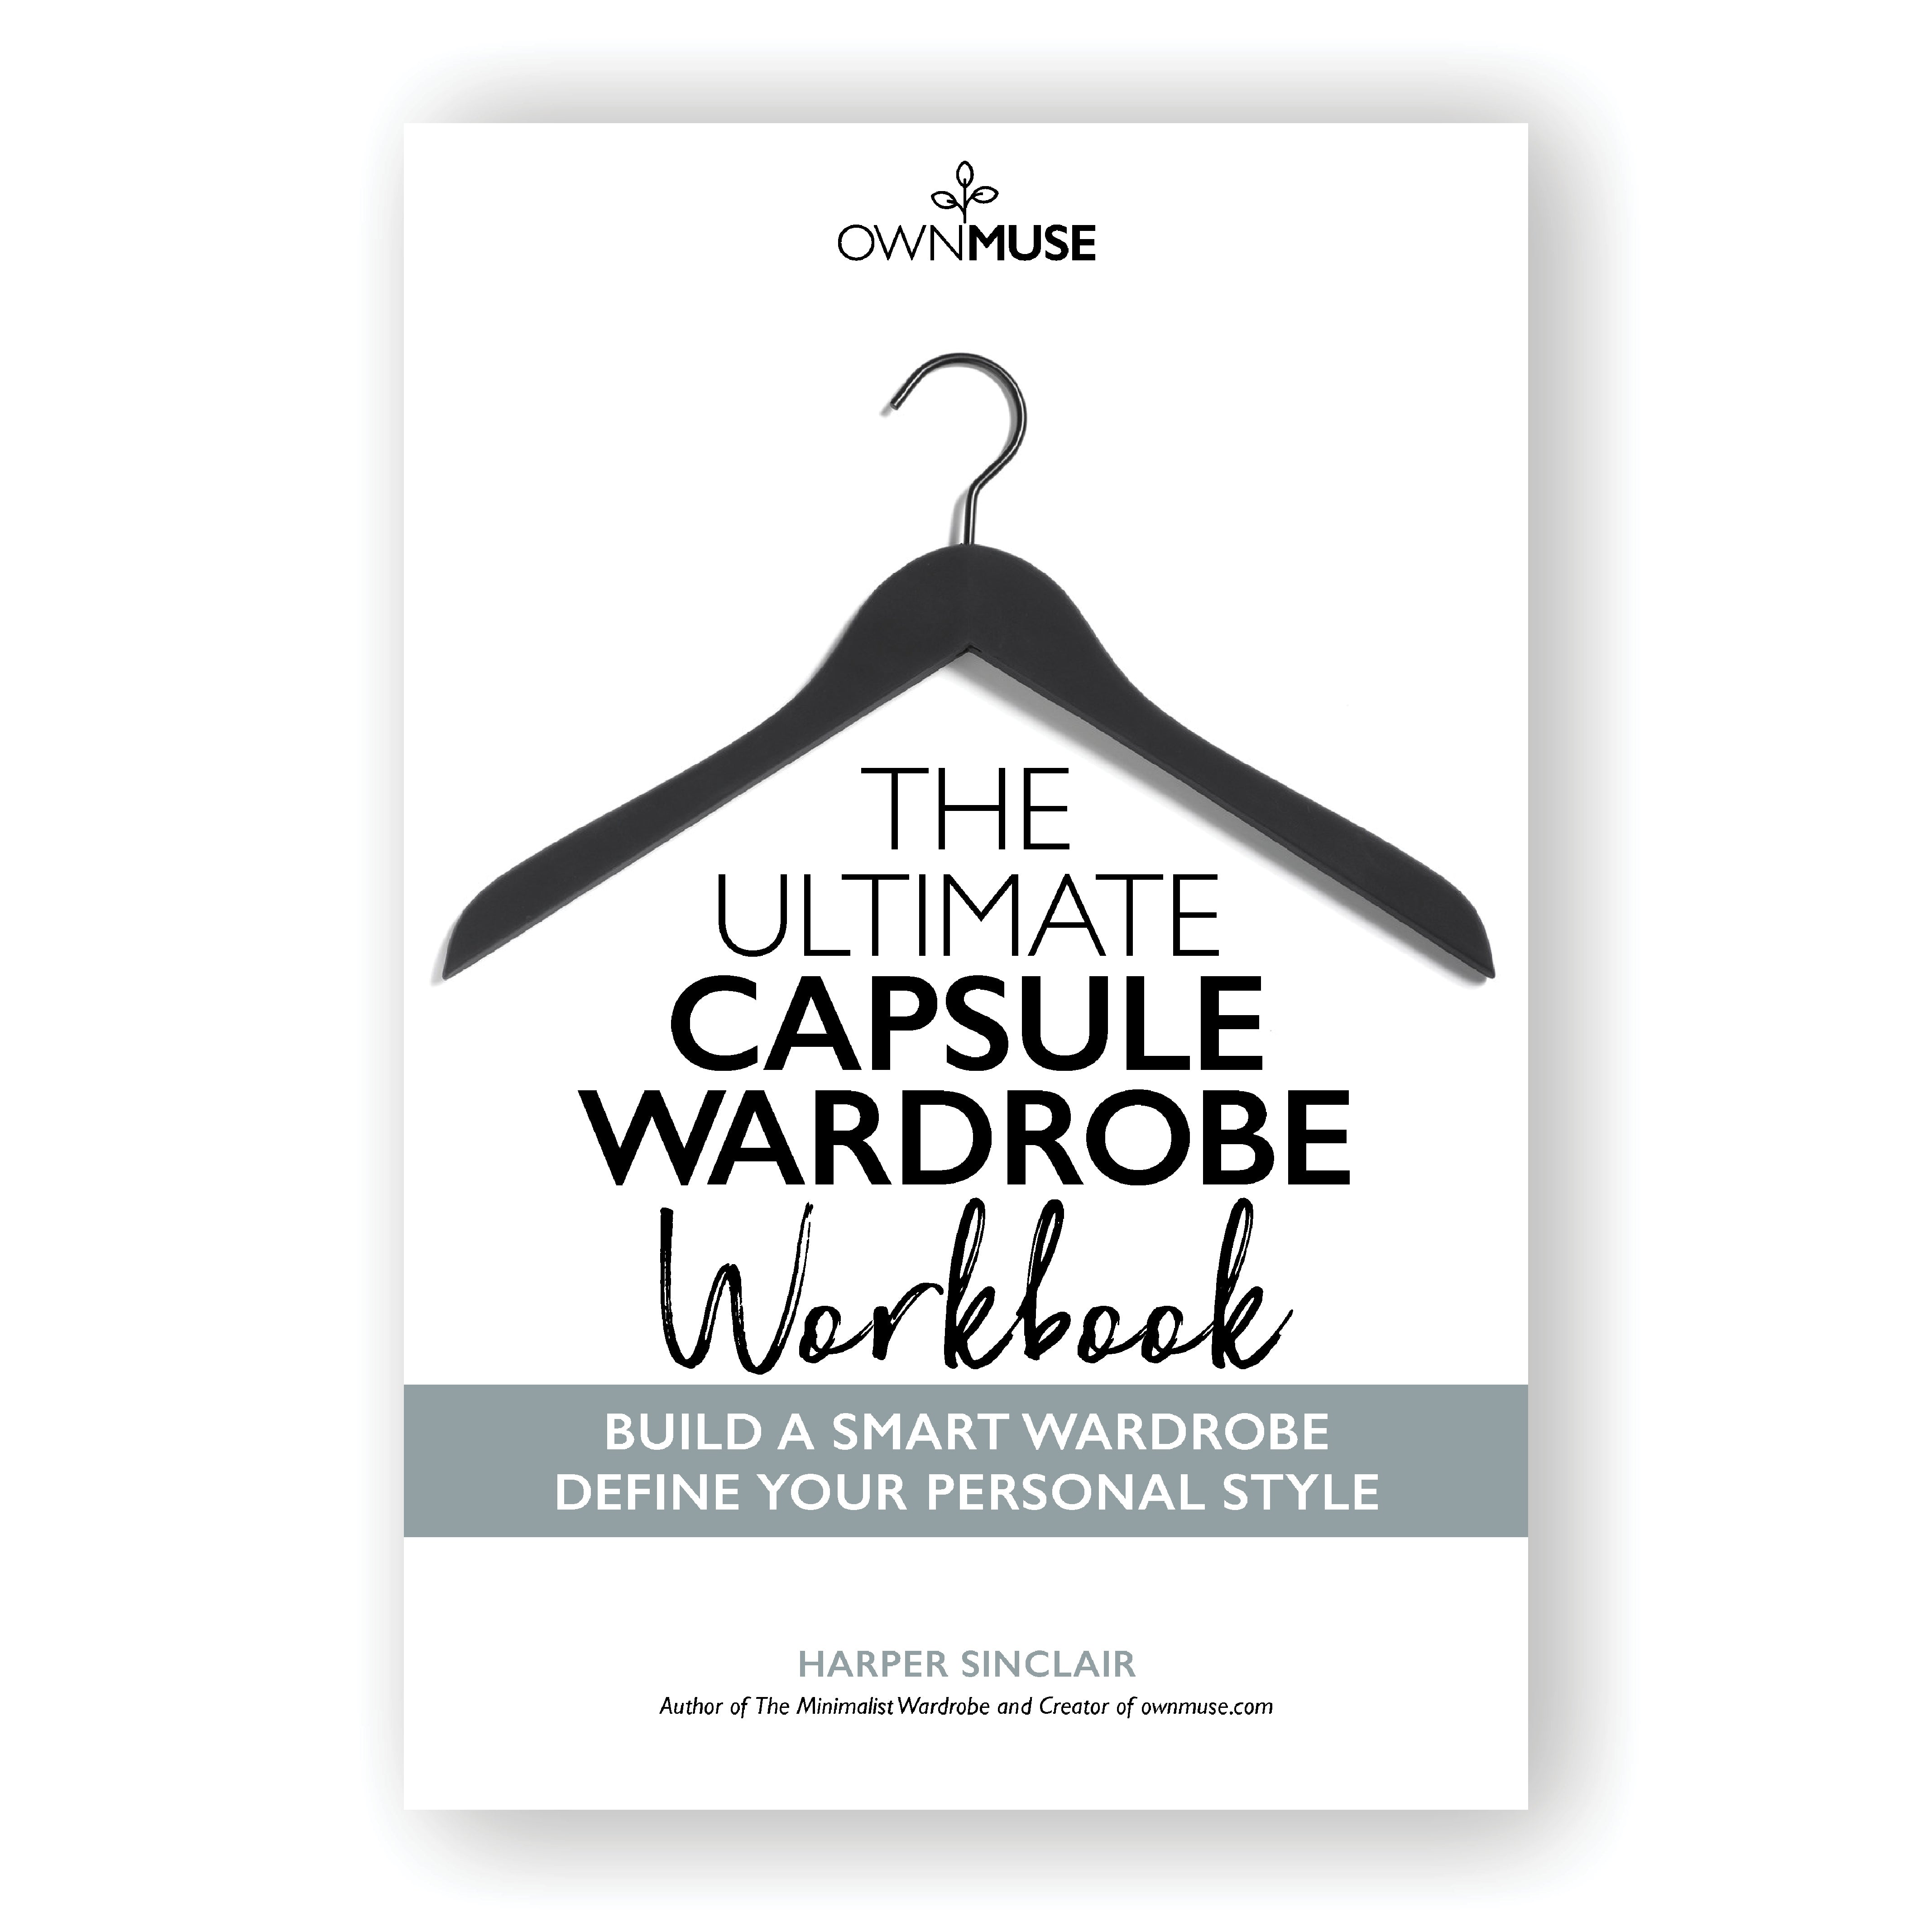 The Ultimate Capsule Wardrobe WorkBook